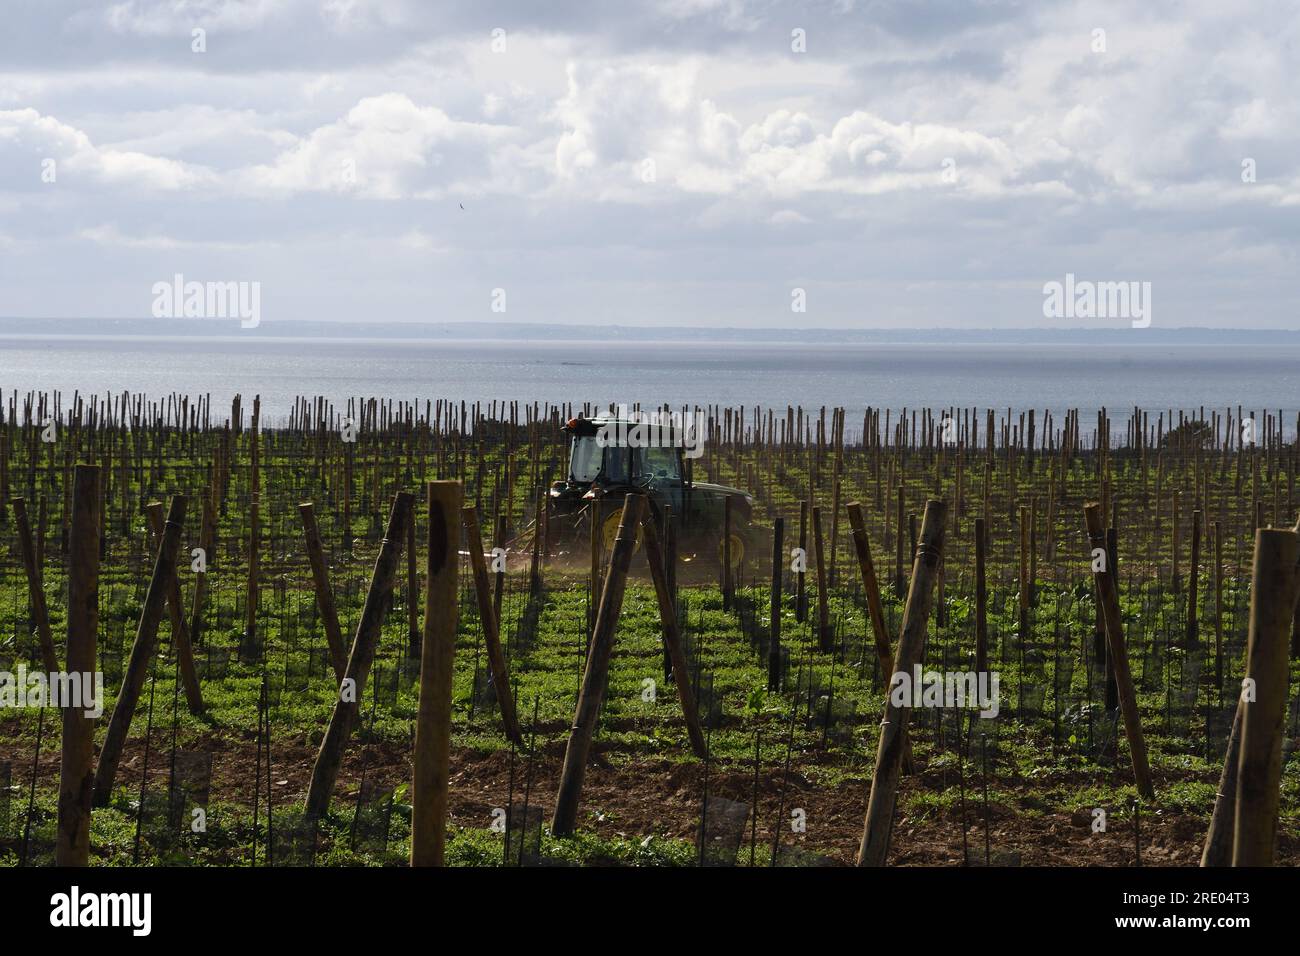 Vignoble nouvellement planté sur la côte bretonne, France, Bretagne, Erquy Banque D'Images